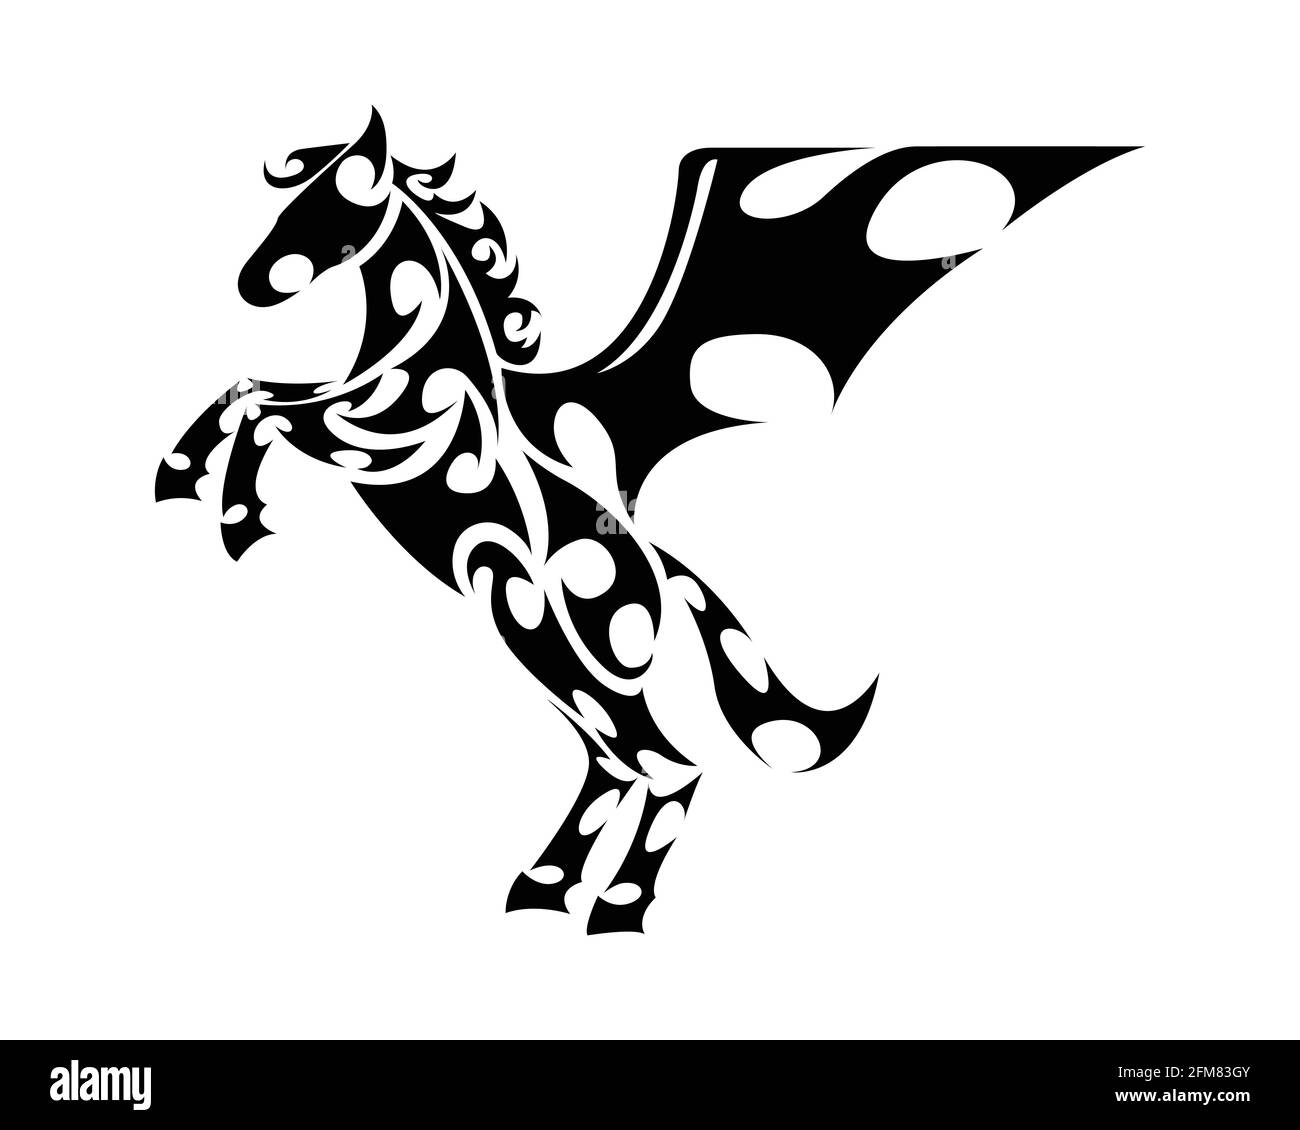 Vecteur art de ligne de cheval avec les jambes avant soulevées. Convient pour une utilisation comme décoration ou logo. Illustration de Vecteur